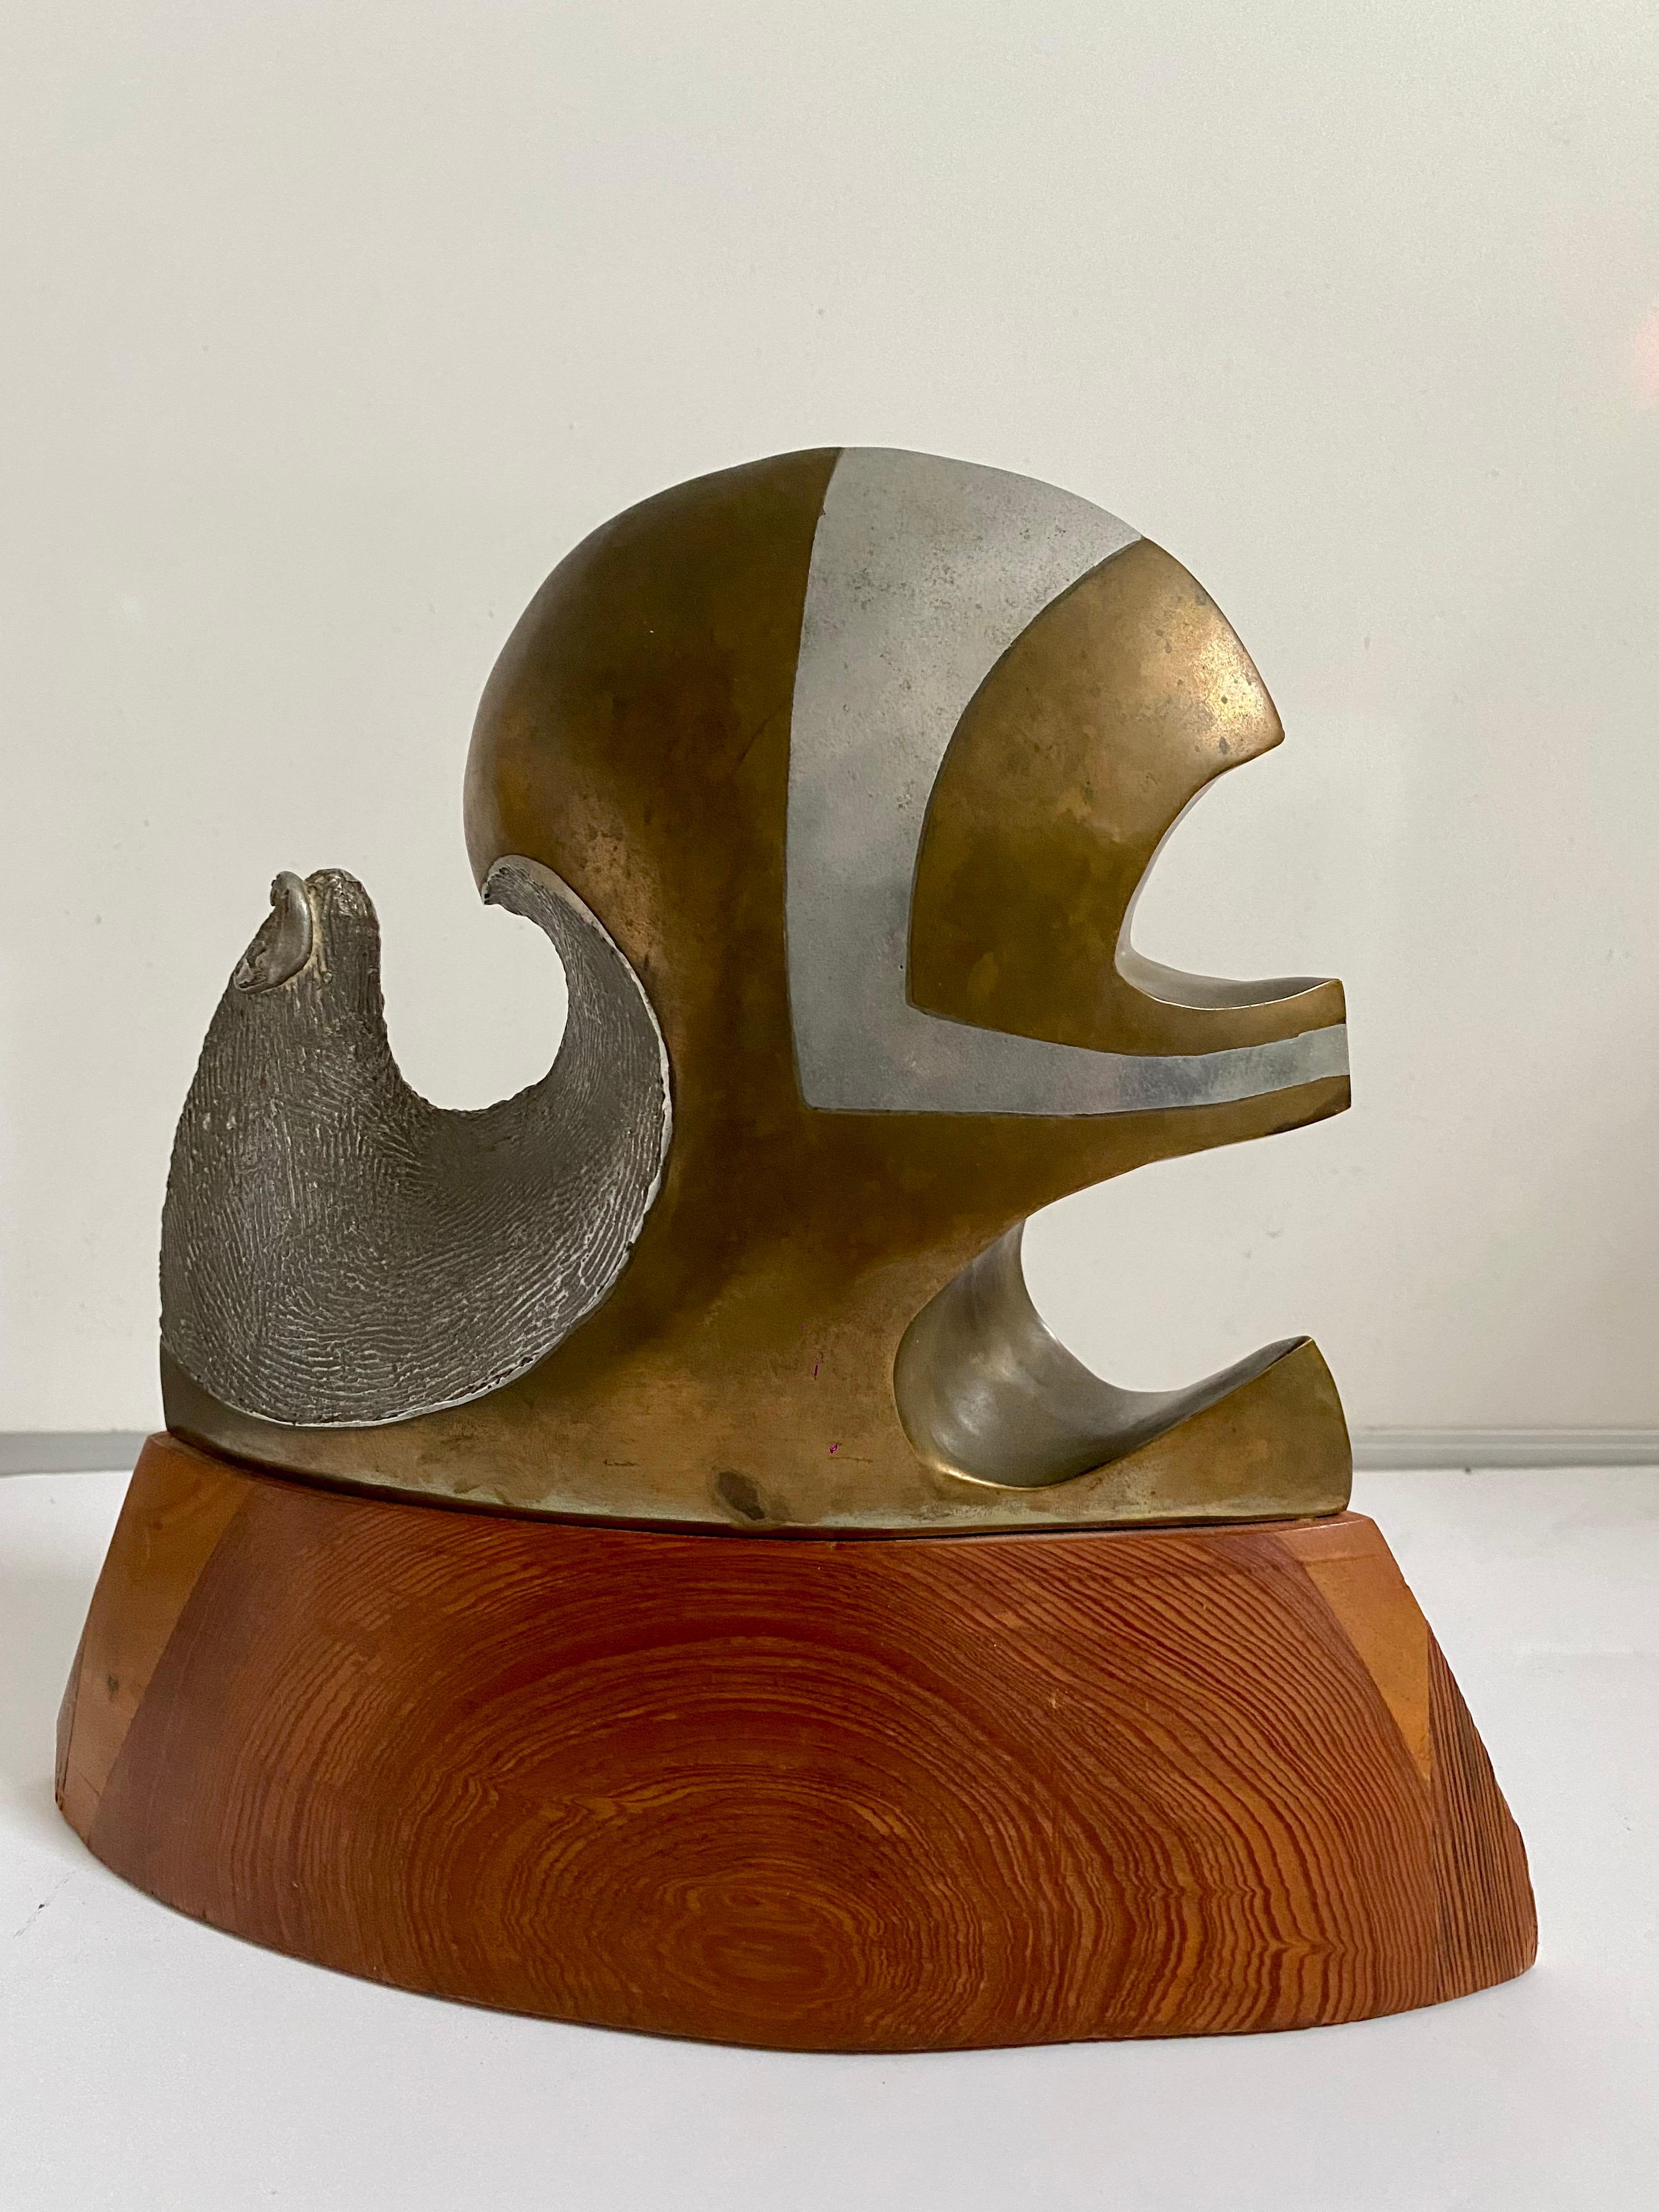 Chester L. Williams
Etikett am Boden, signiert. Titel: Promethium
Medium: Bronze, Aluminium und Holz. 
Ungefähre Abmessungen: 12 X 11 X 4 Zoll. 

Chester Lee Williams (1944-1919) wurde 1944 in Durham, North Carolina, geboren. Chester kultivierte